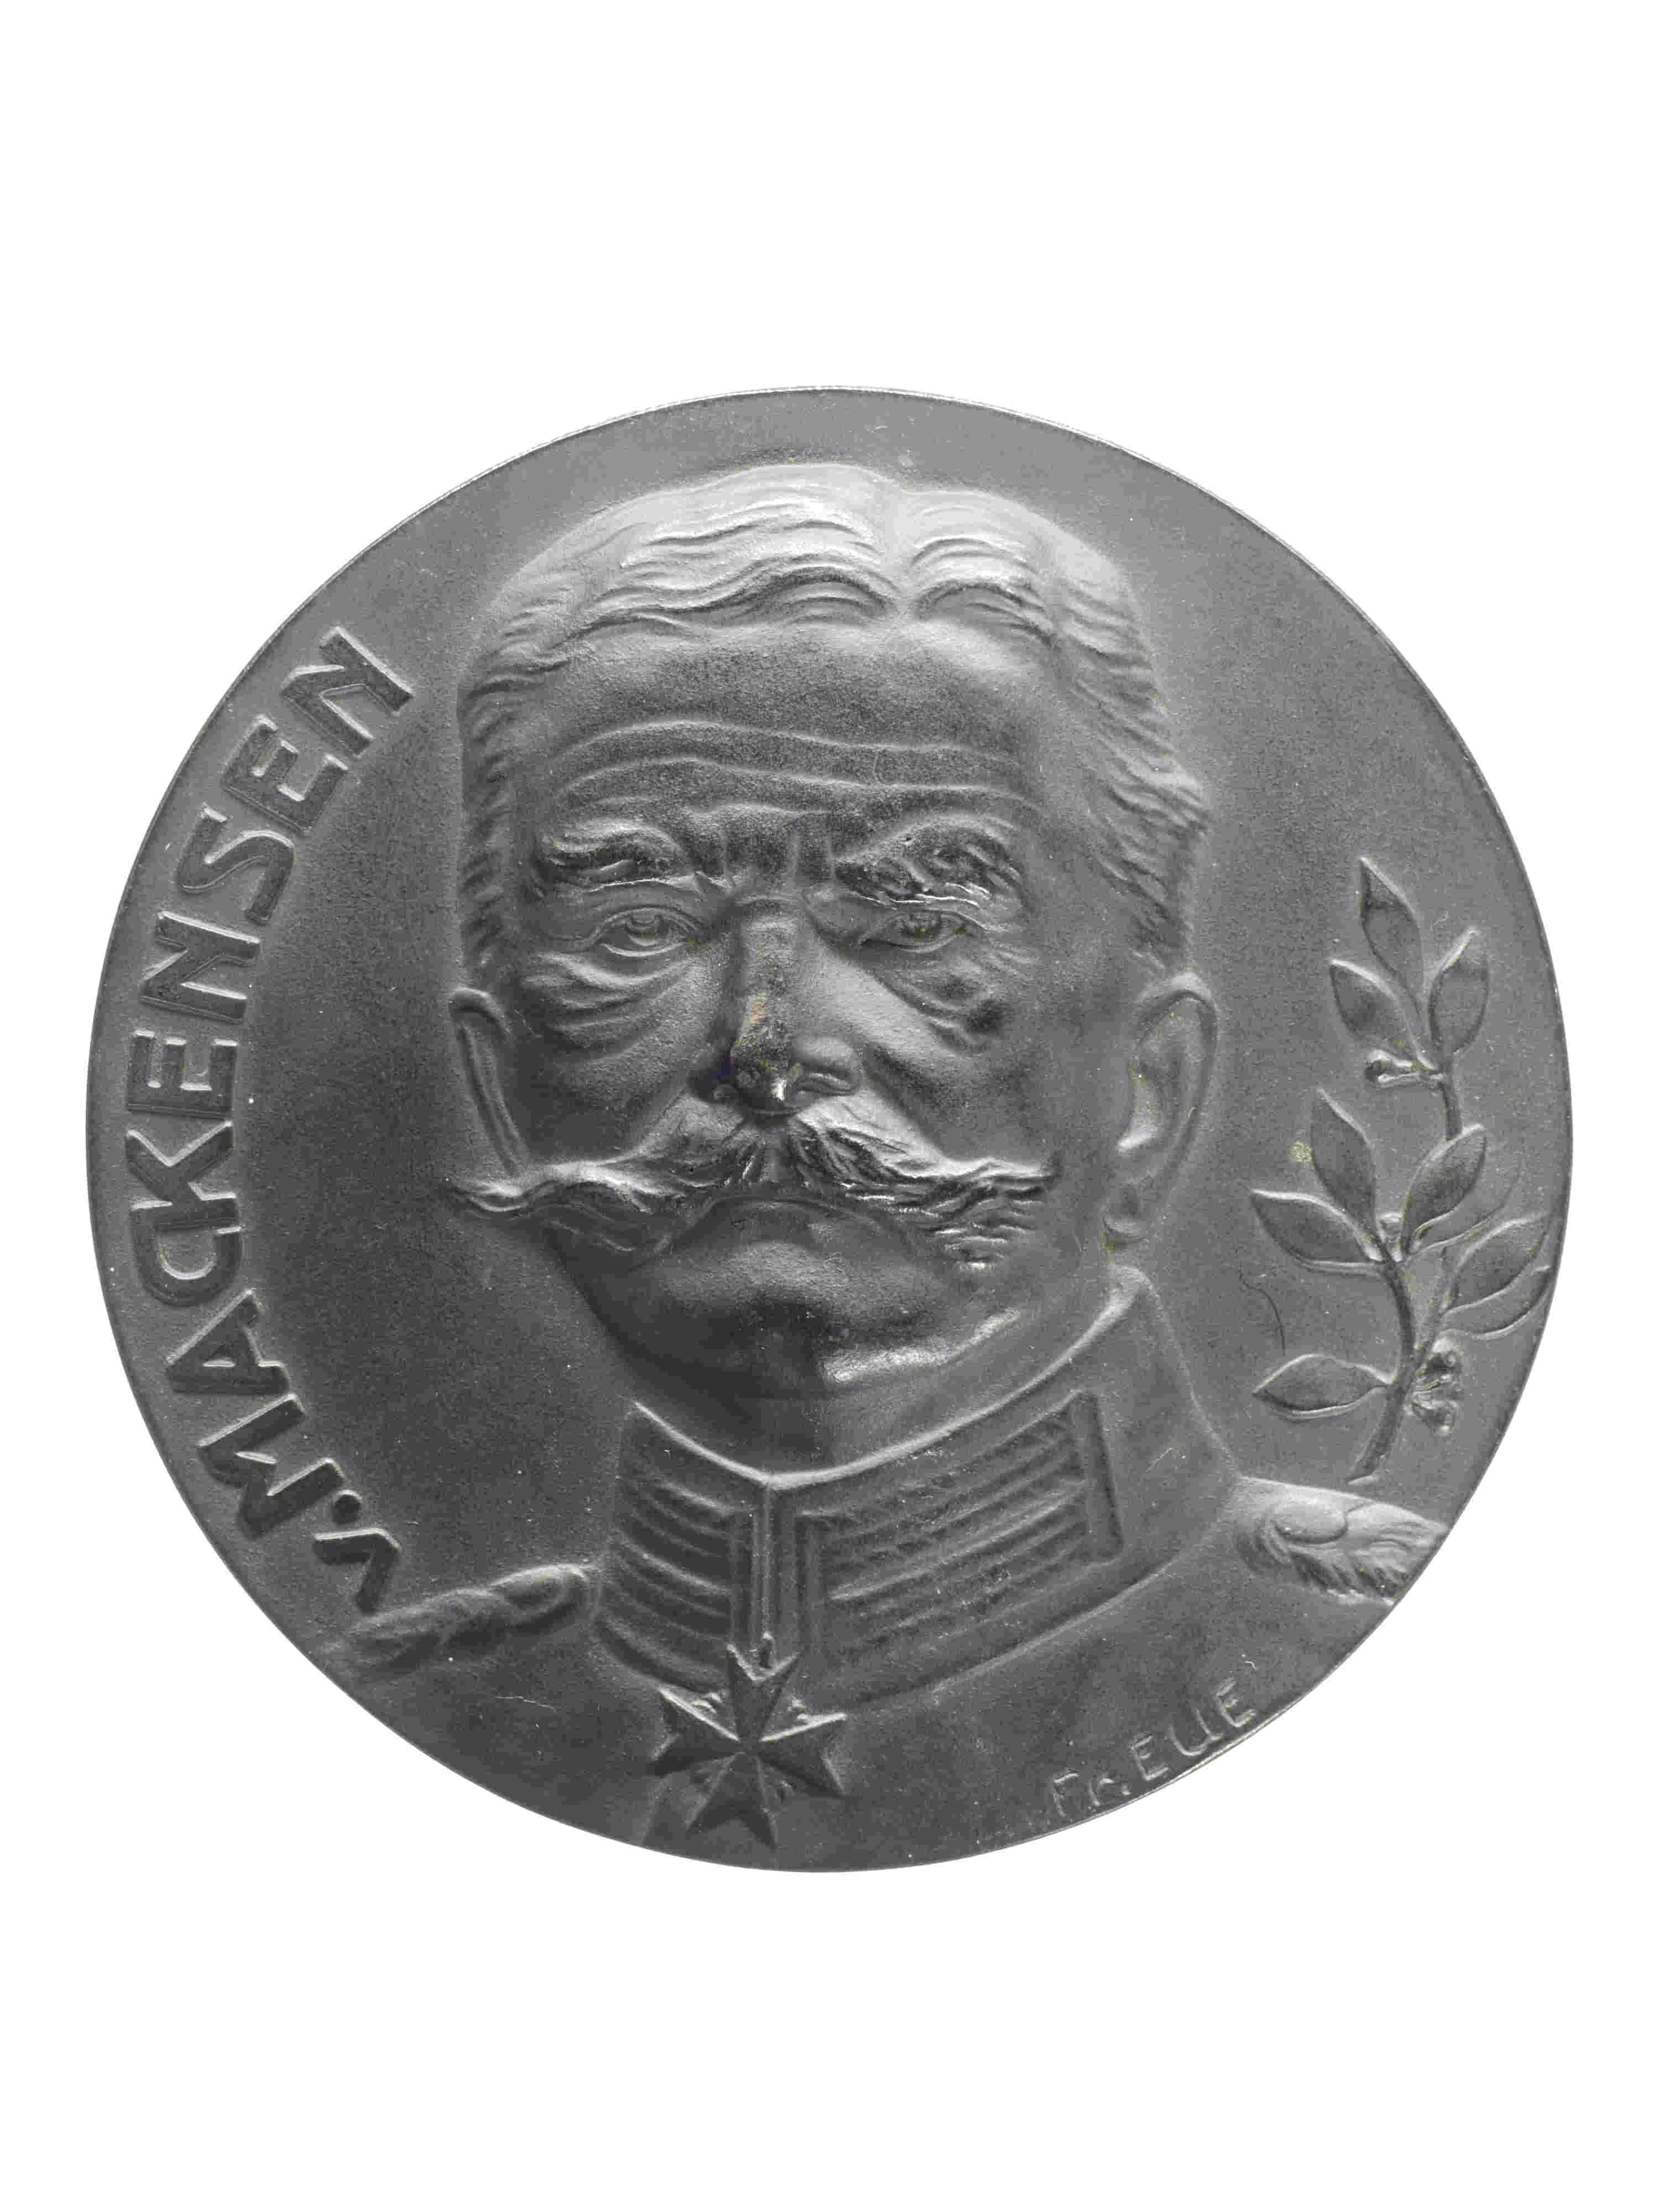 Medaille "General v. Mackensen/Brest Litowsk" 1915 (Historisches Museum der Pfalz, Speyer CC BY)